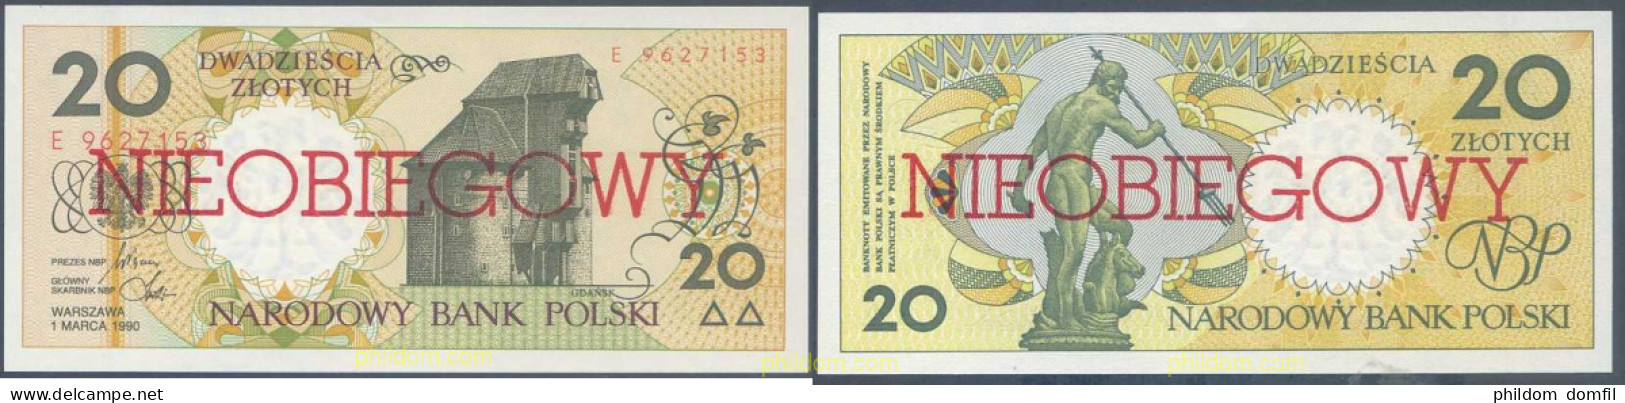 6715 POLONIA 1990 POLAND 1990 20 ZLOTYCH NIEOBIEGOWY - Polonia